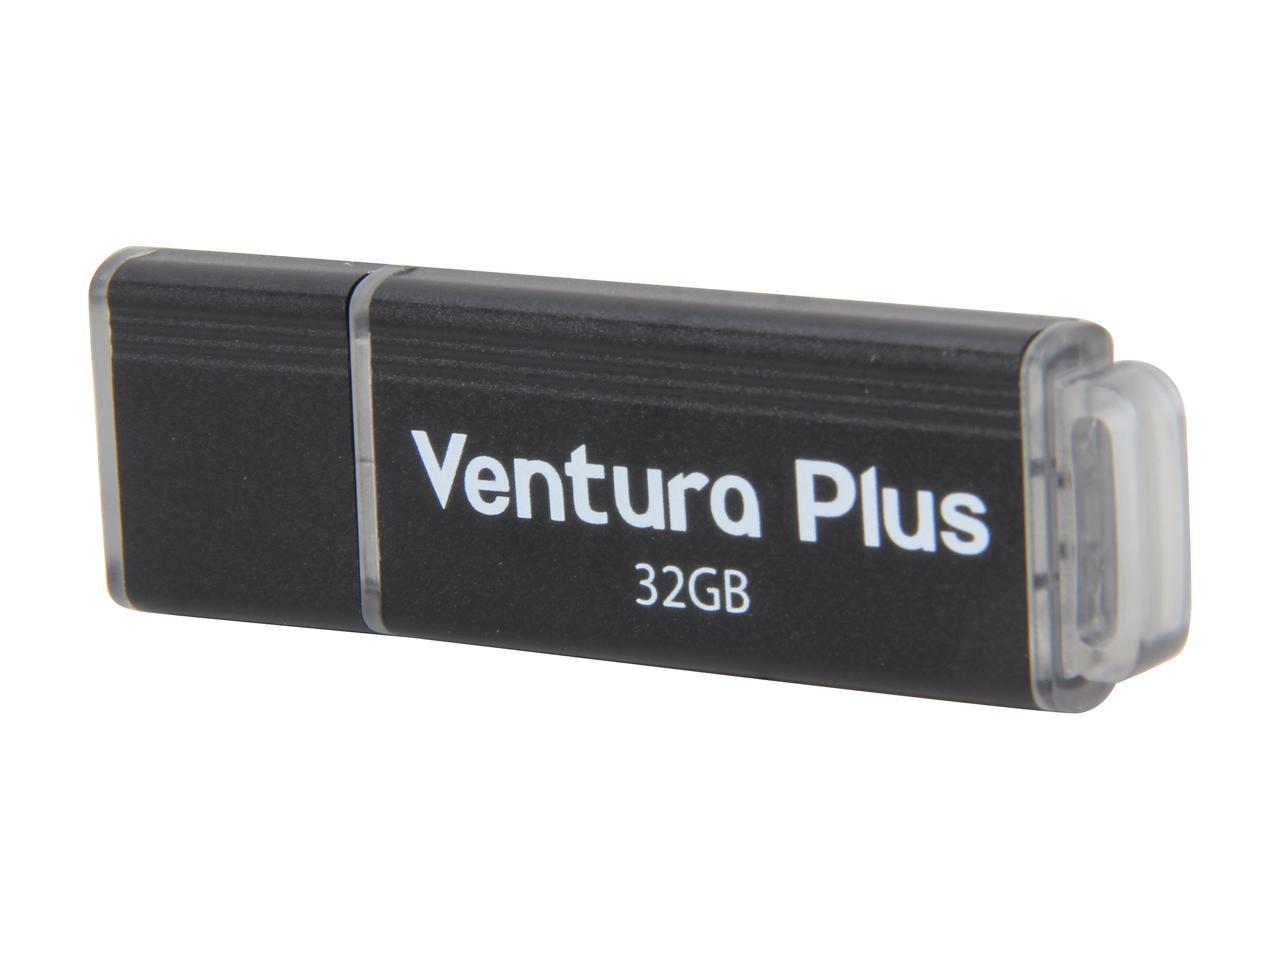 Mushkin Ventura Plus 32GB USB 3.0 Ultra High Speed Flash Drive Model MKNUFDVS32GB